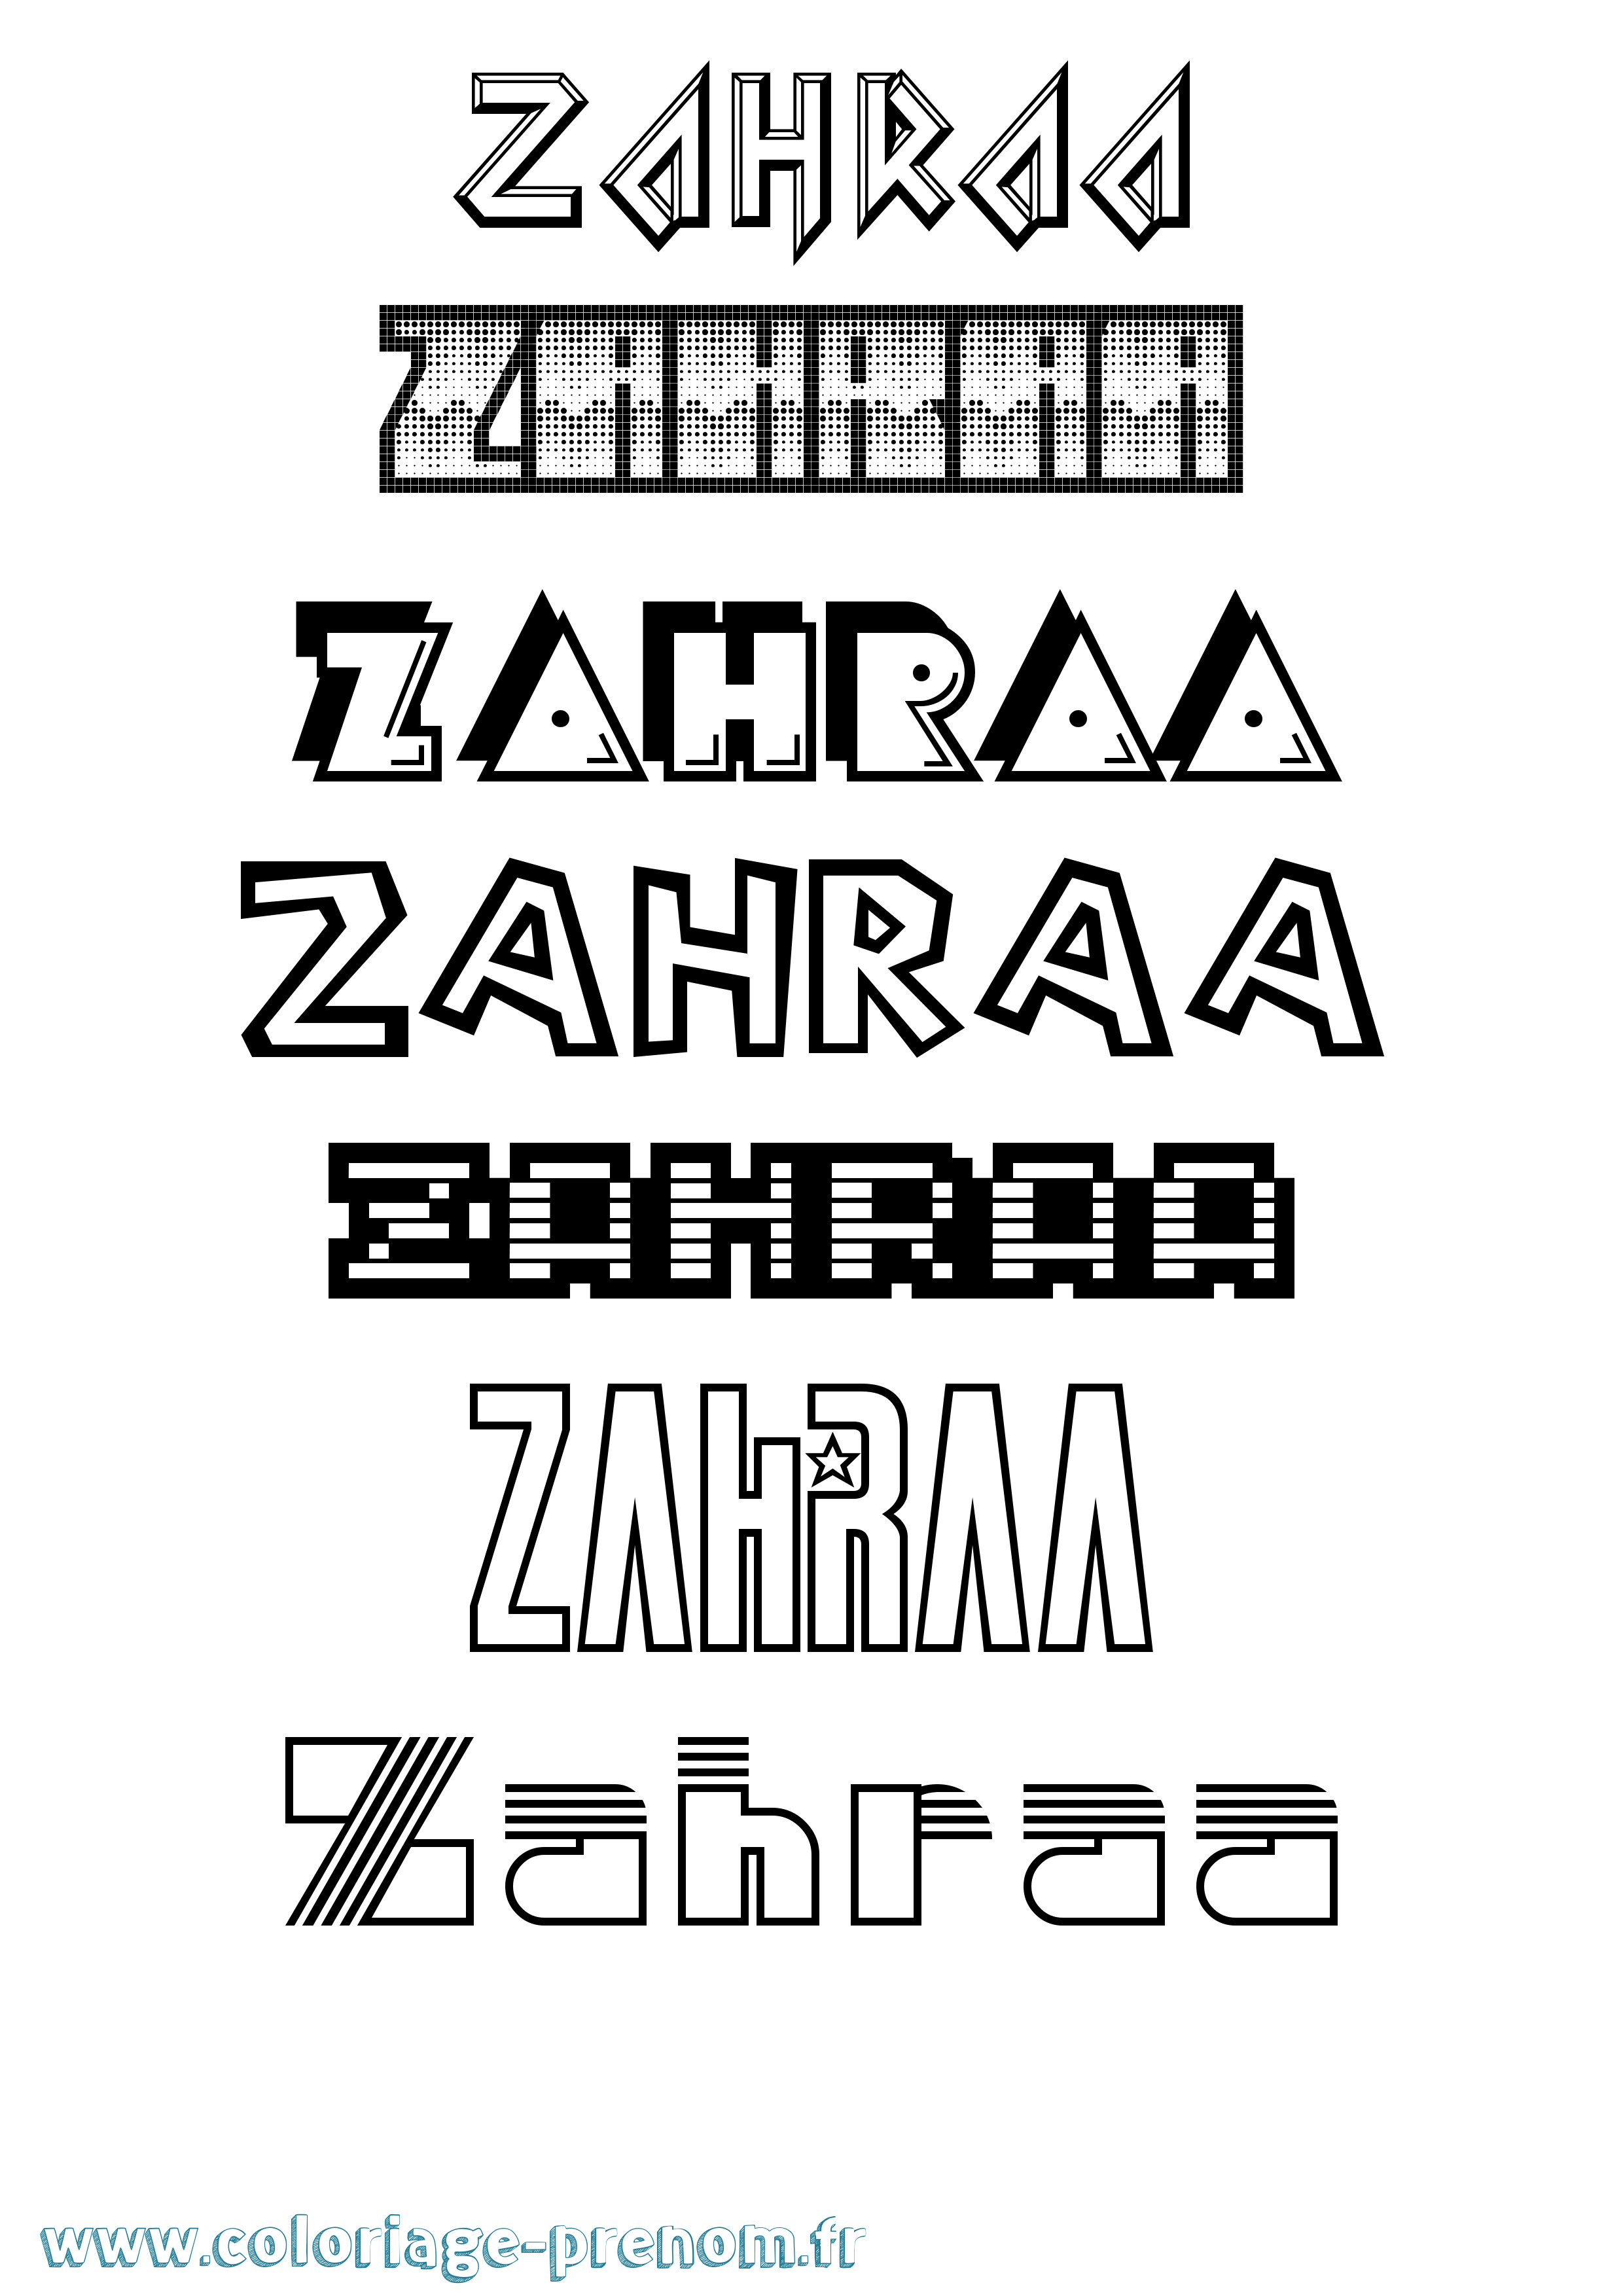 Coloriage prénom Zahraa Jeux Vidéos